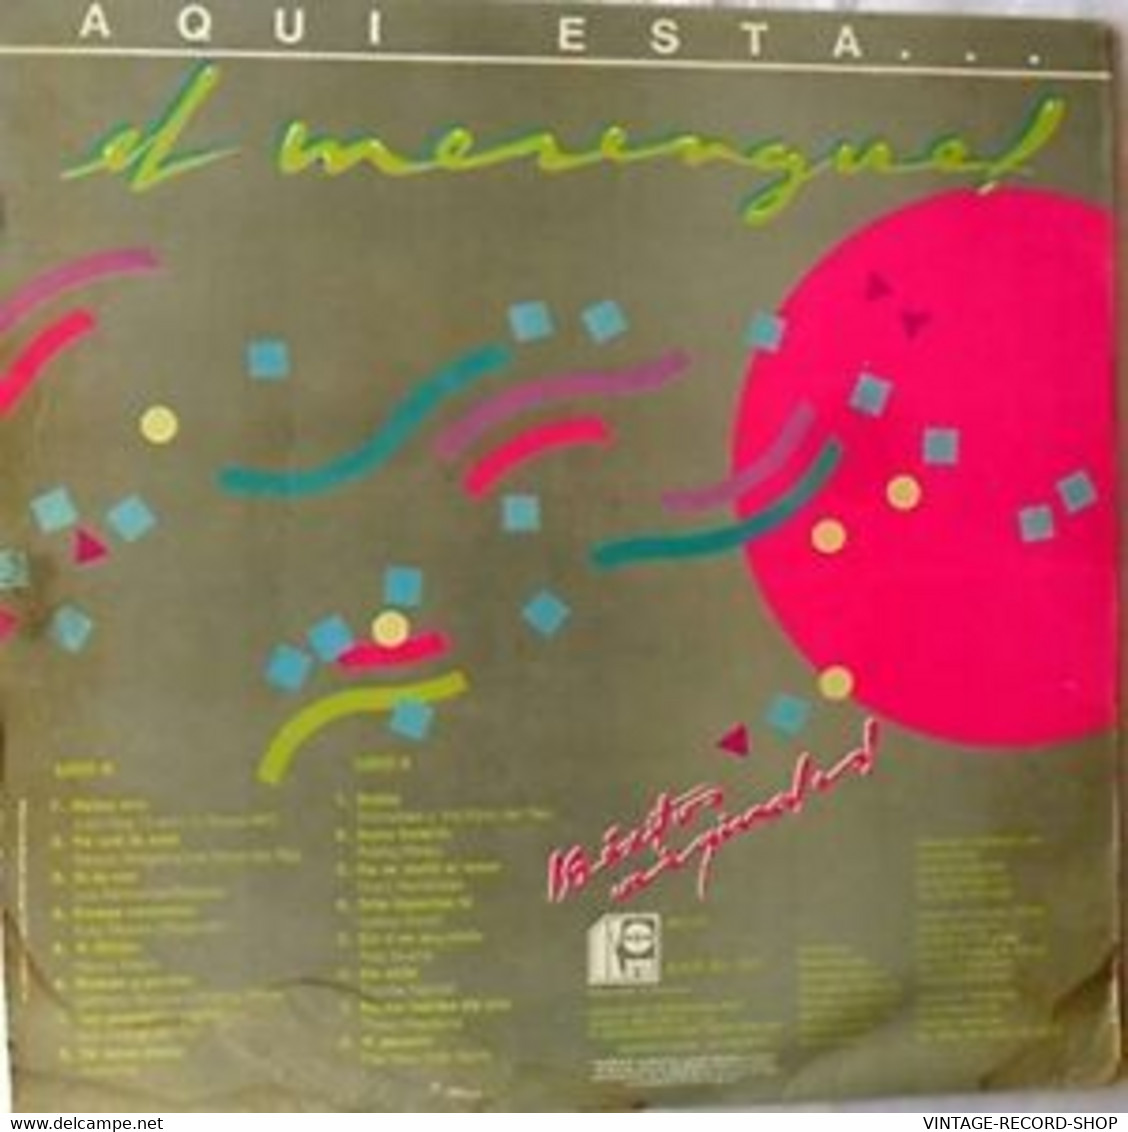 AQUI ESTA EL MERENGUE-LOS 16 EXITOS ORIGINALES-KAREN VENEZUELA 1995 VG++ - Other - Spanish Music